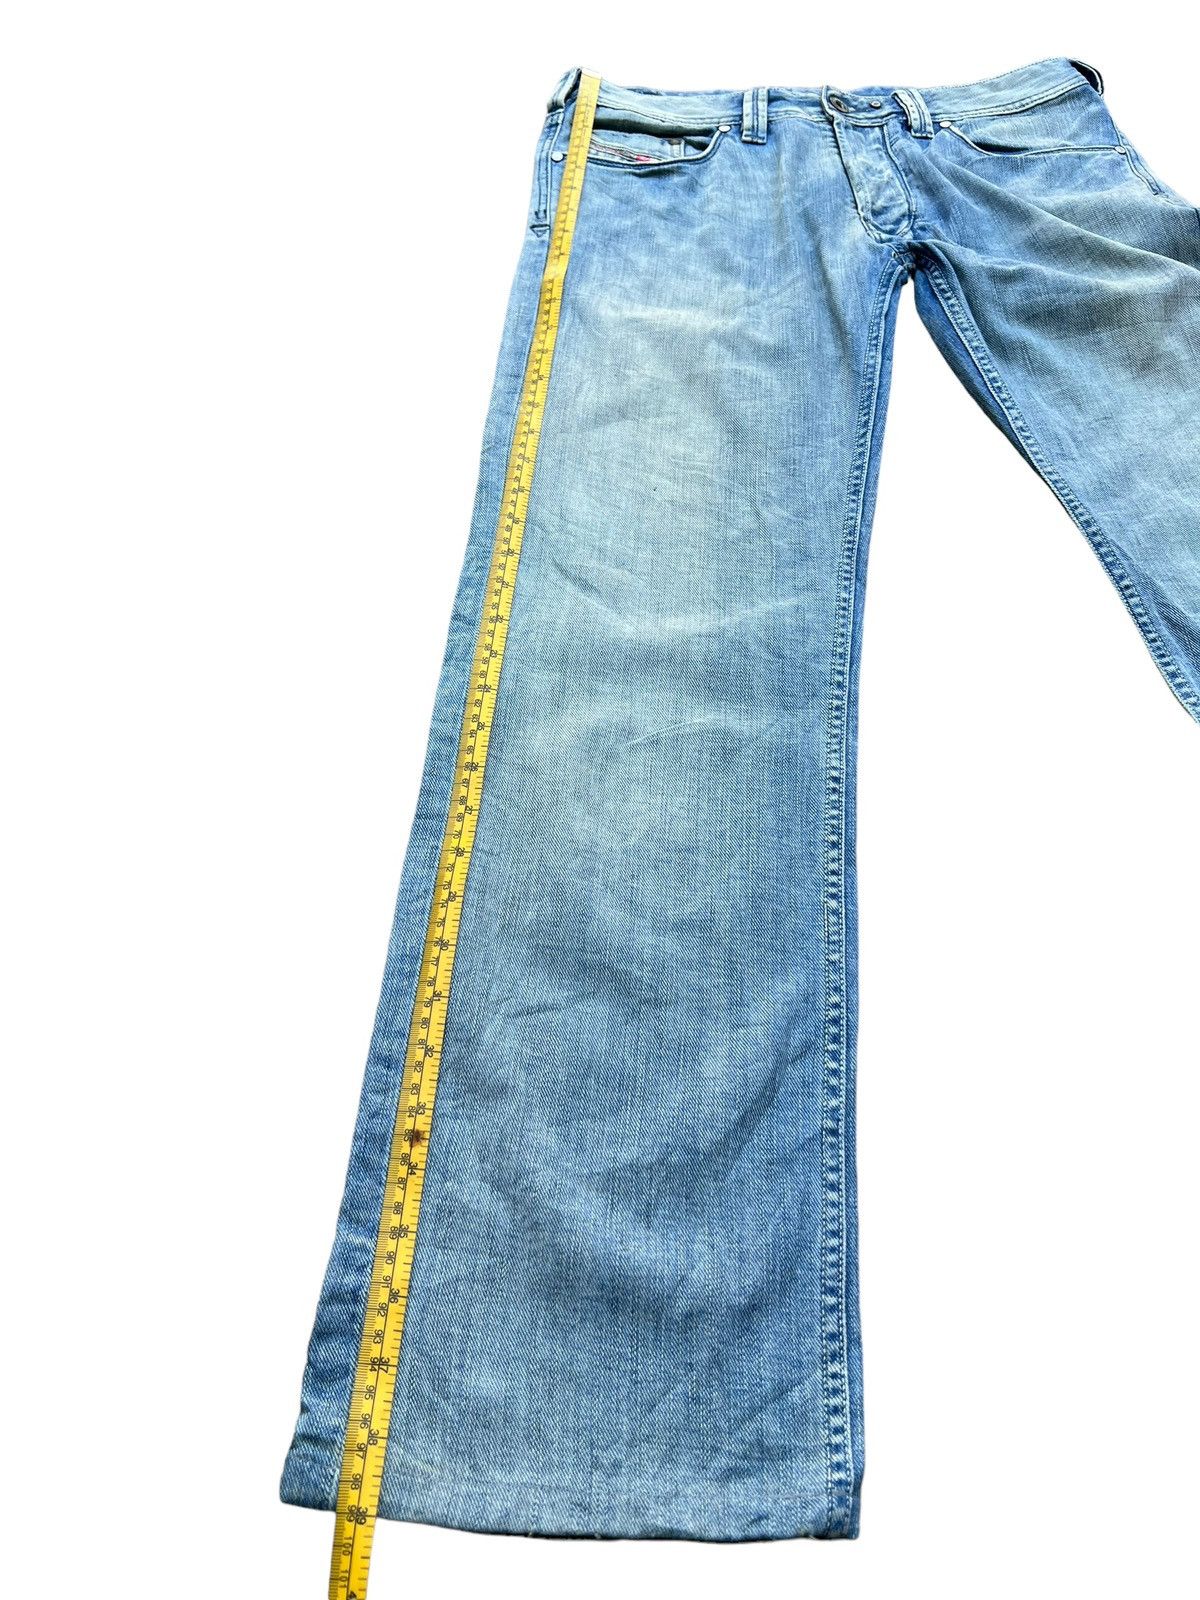 Vintage Distressed Diesel Industry Wide Jeans 32x30 - 12